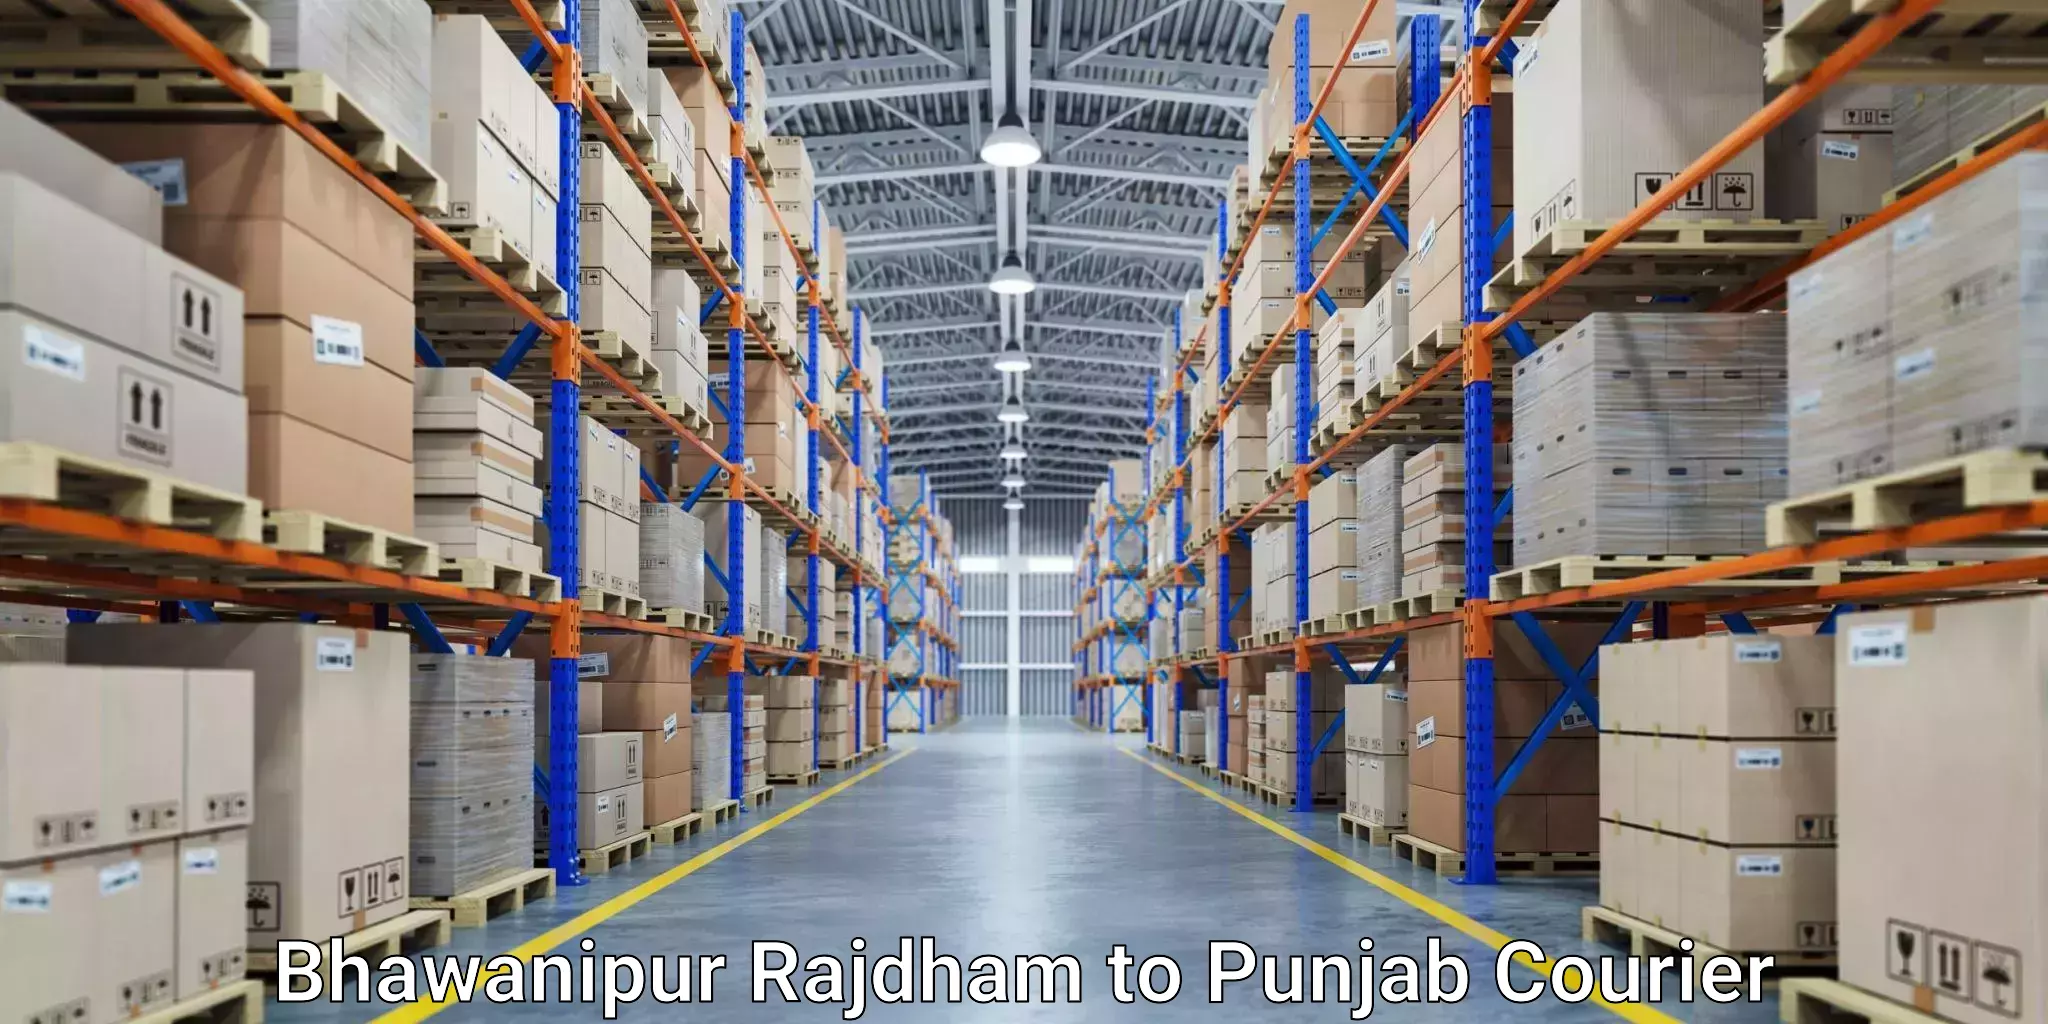 Tech-enabled shipping Bhawanipur Rajdham to Sri Hargobindpur